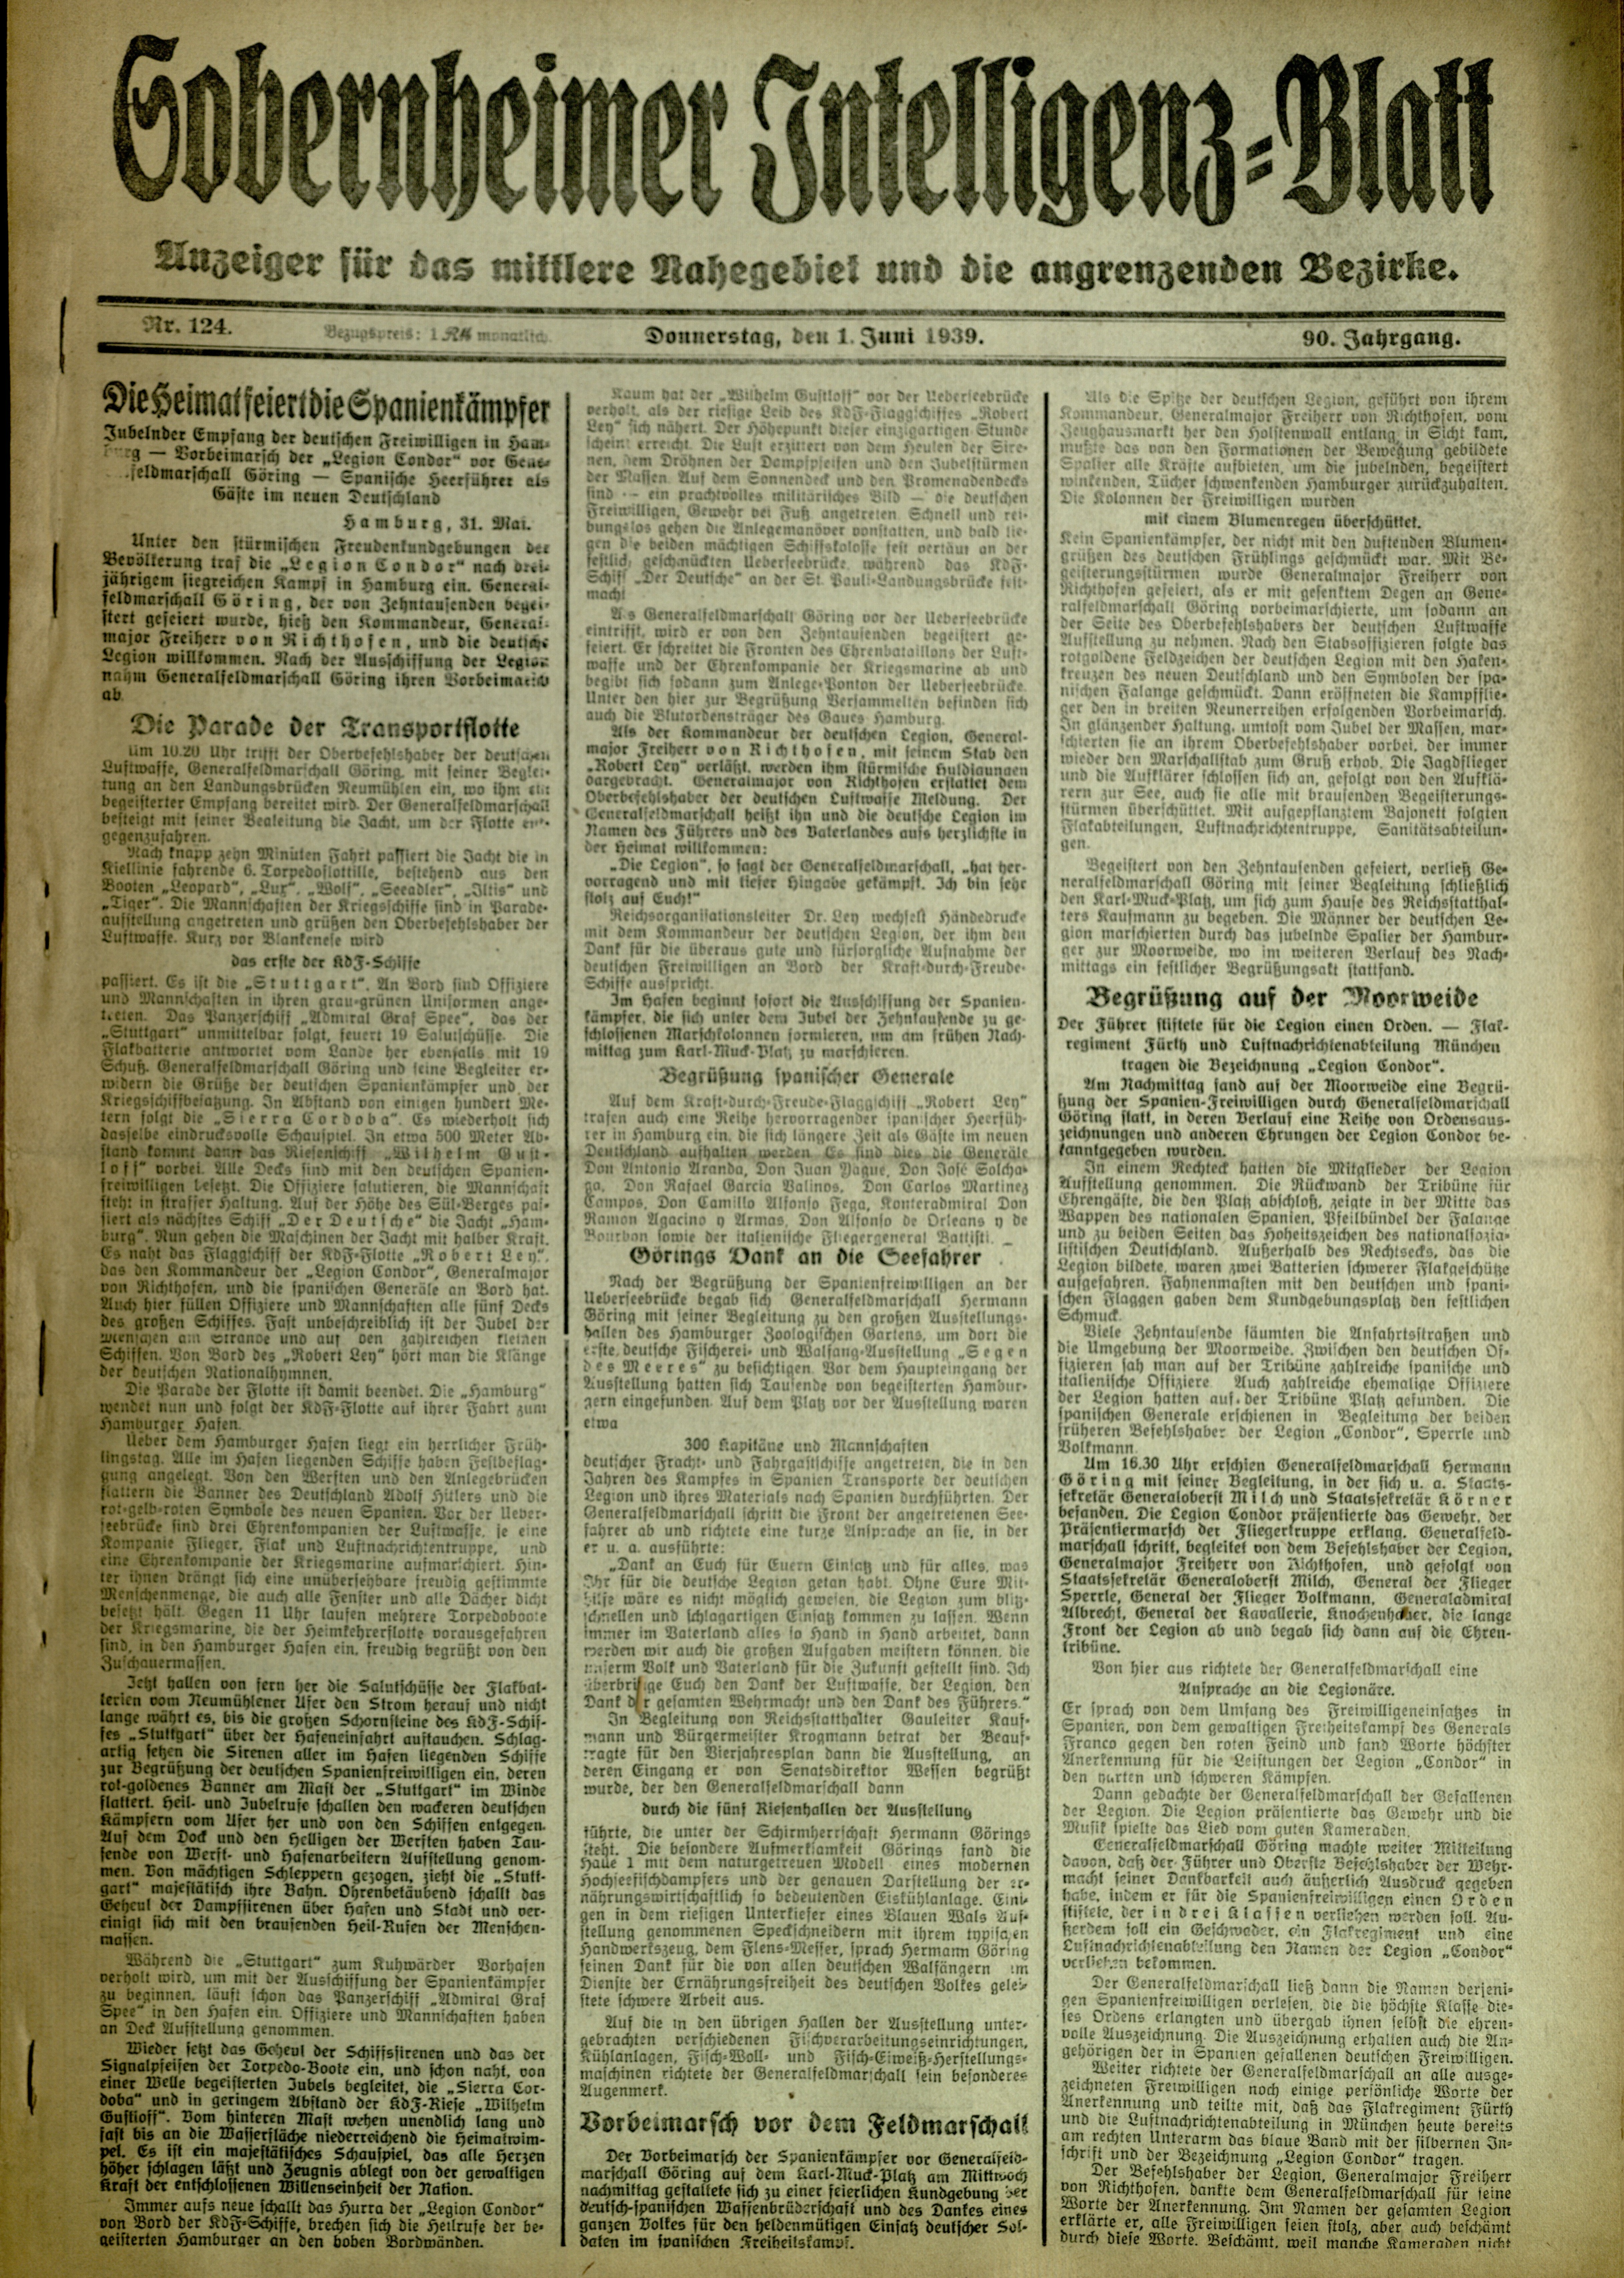 Zeitung: Sobernheimer Intelligenzblatt; Juni 1939, Jg. 90 Nr. 124 (Heimatmuseum Bad Sobernheim CC BY-NC-SA)